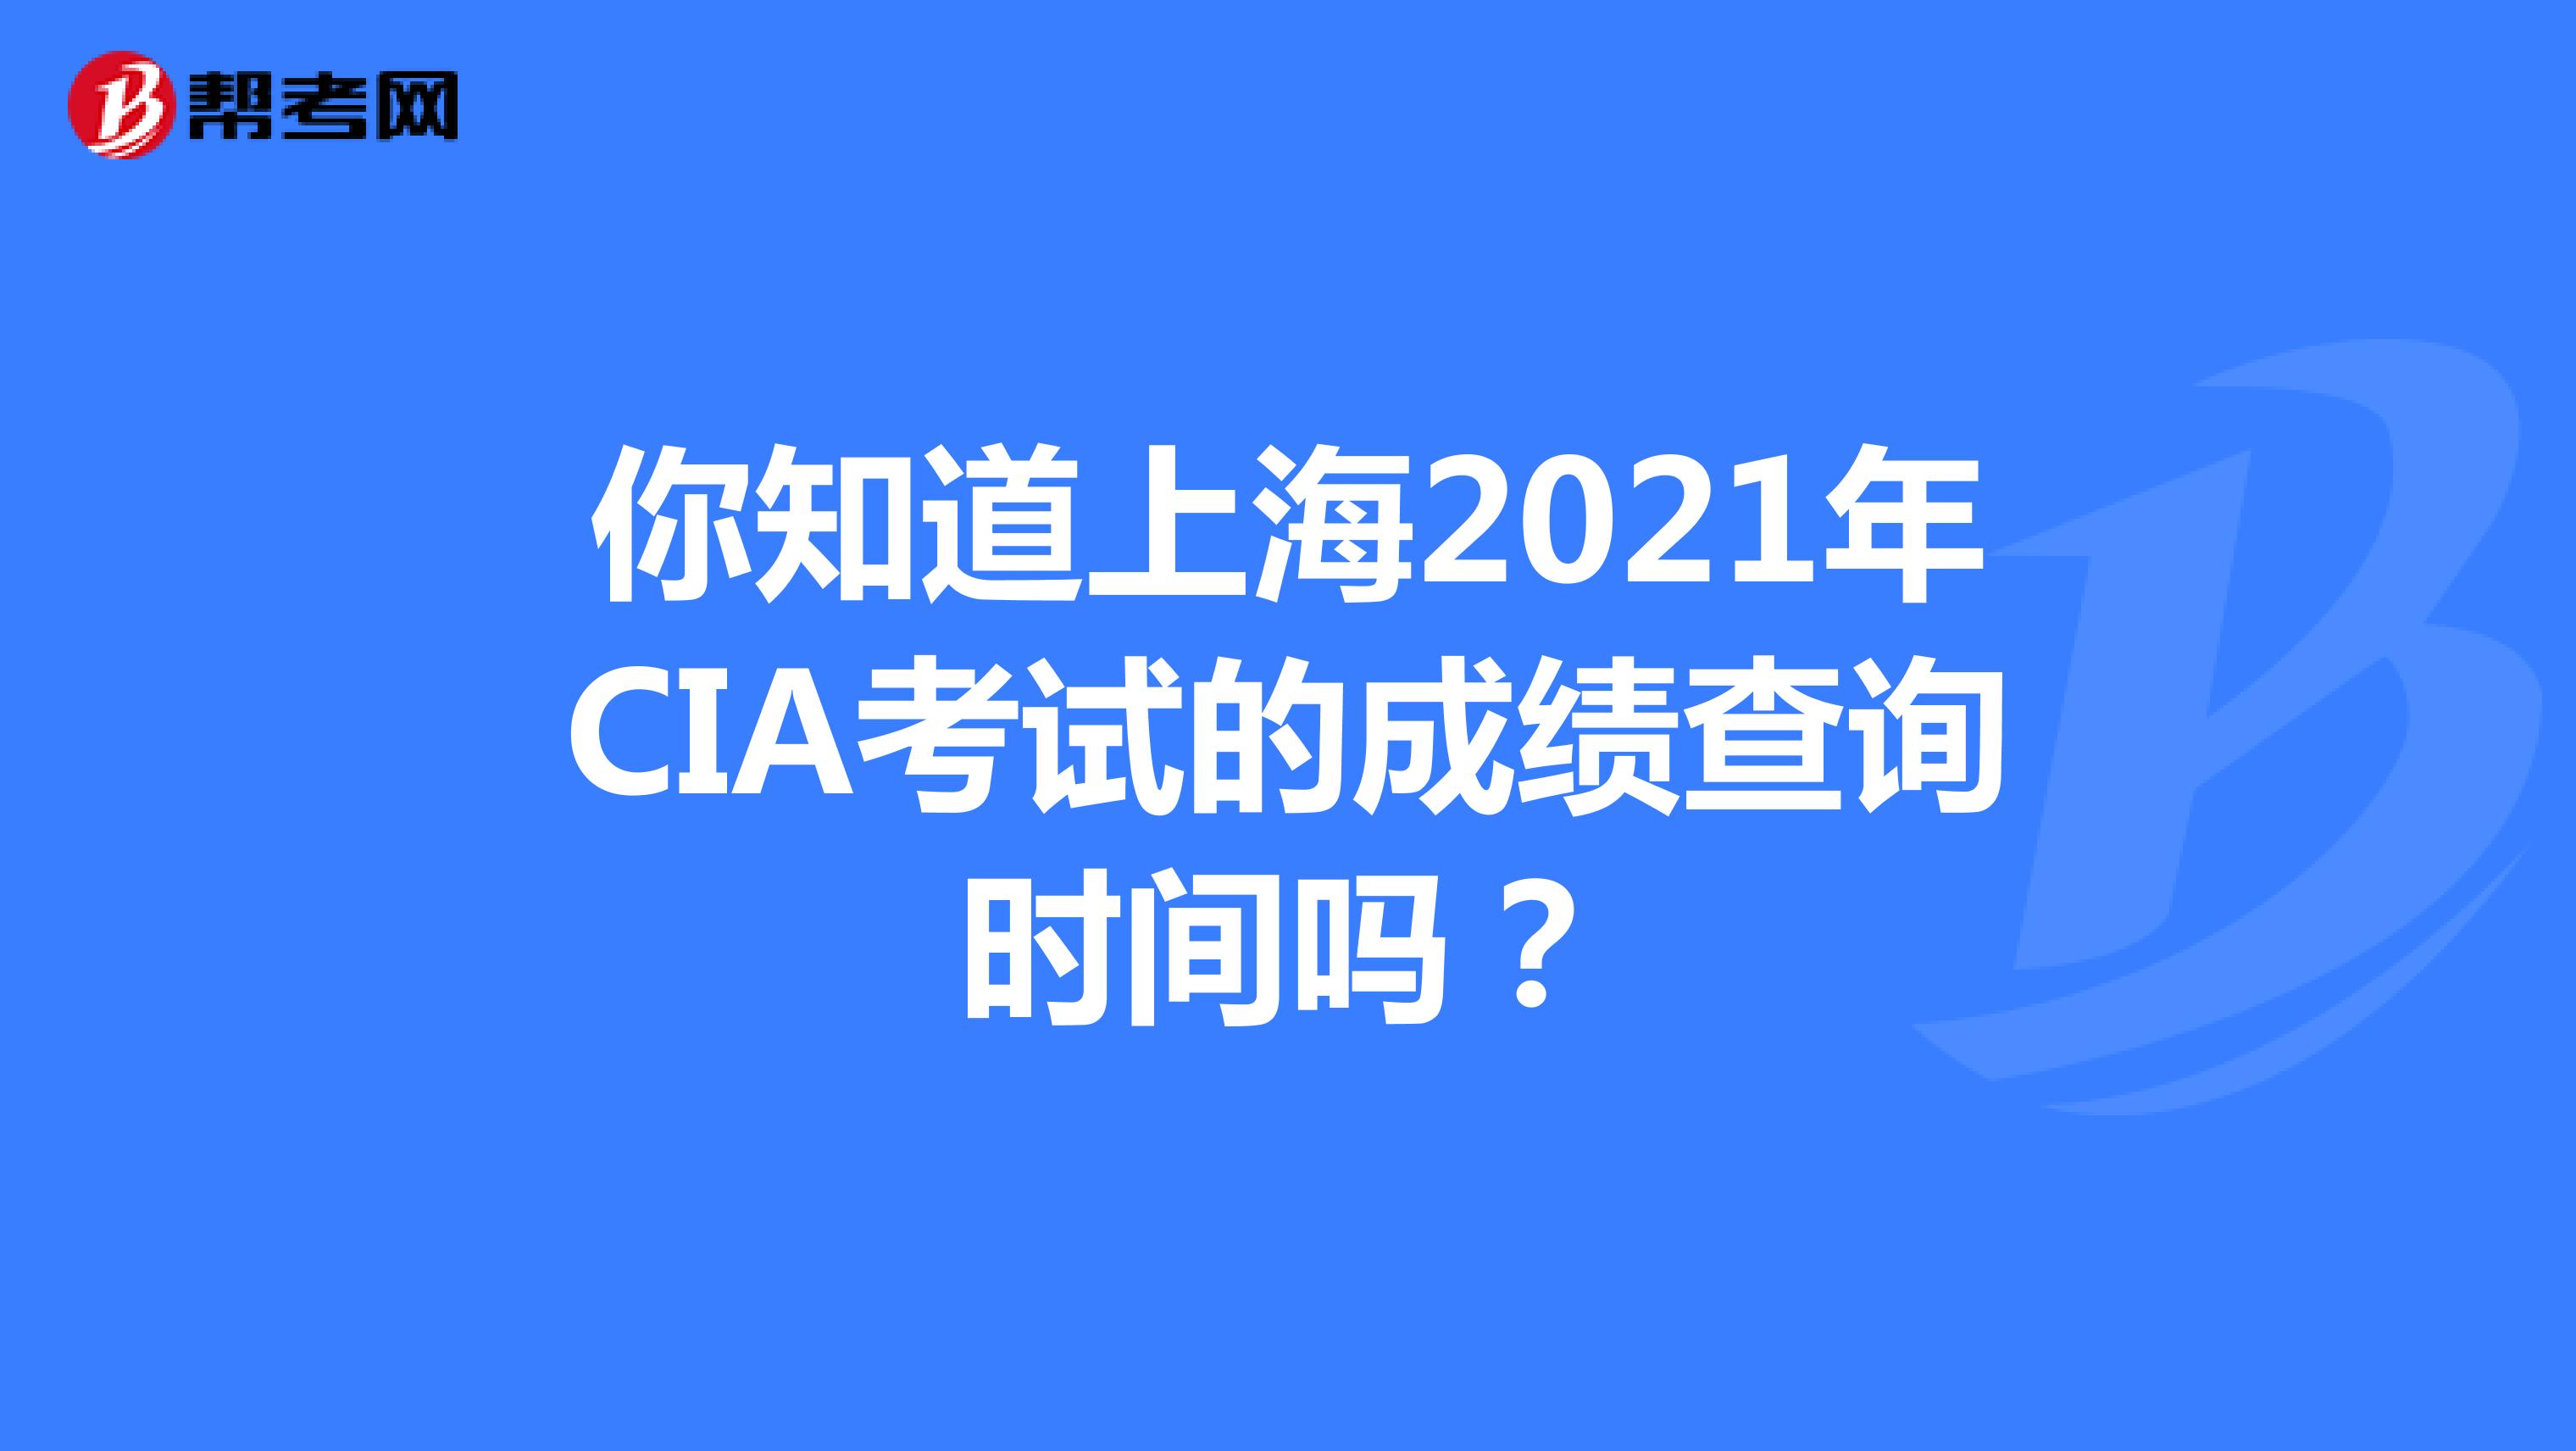 你知道上海2021年CIA考试的成绩查询时间吗？